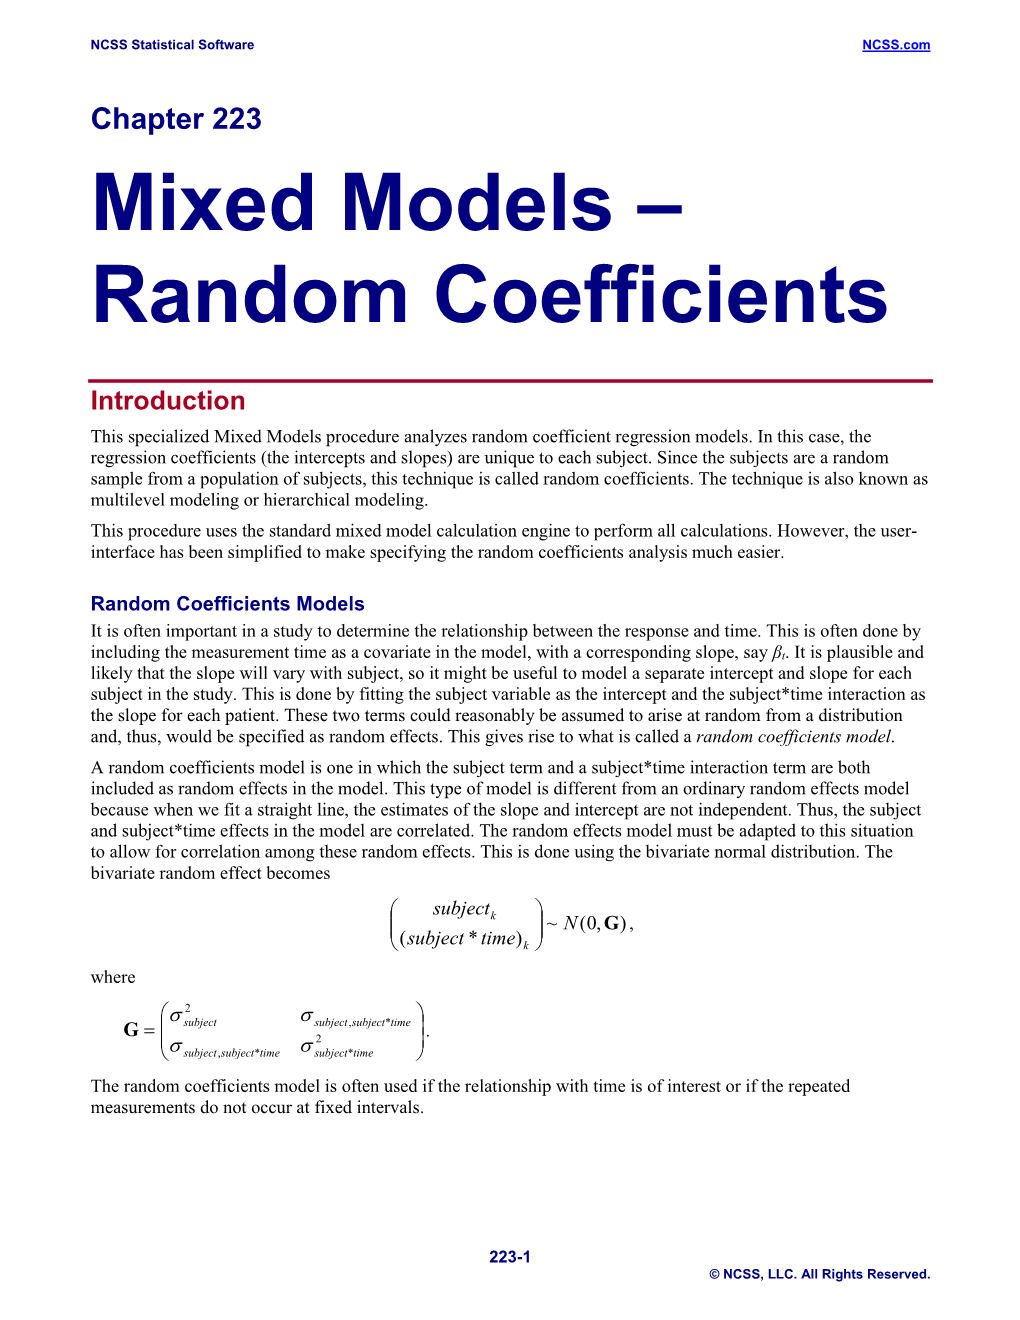 Mixed Models – Random Coefficients